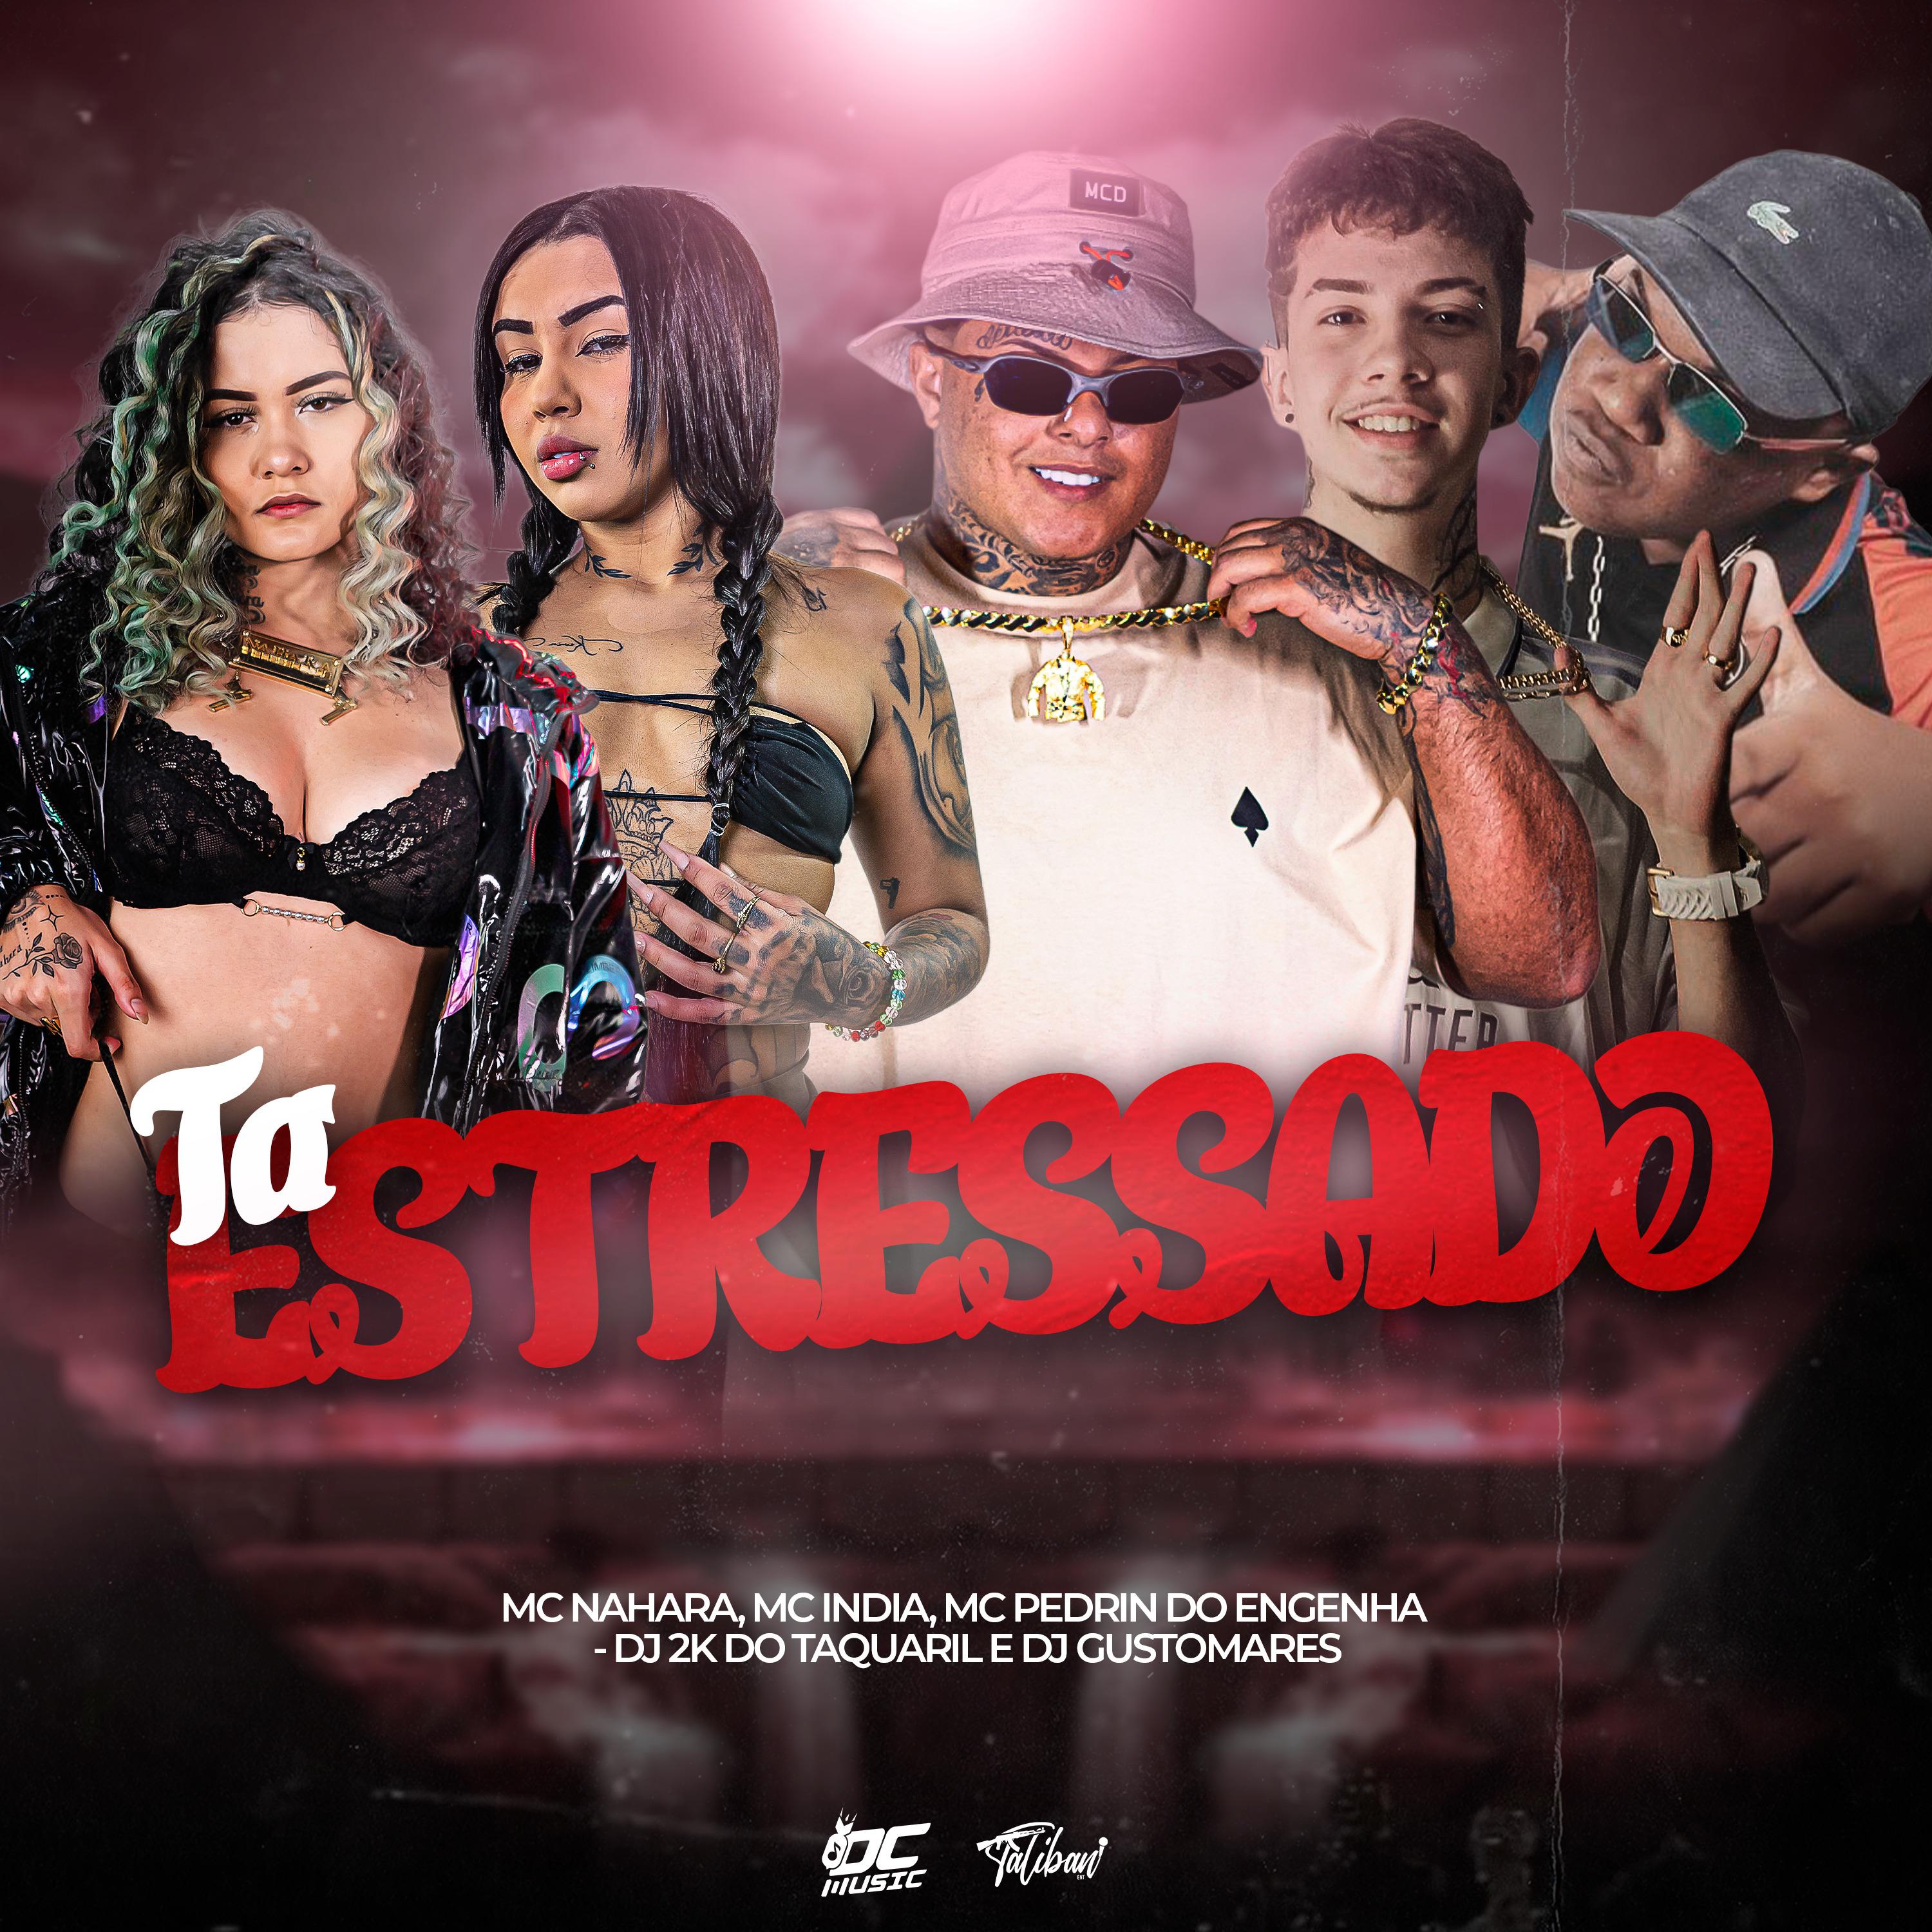 DJ 2K DO TAQUARIL - Ta Estressado